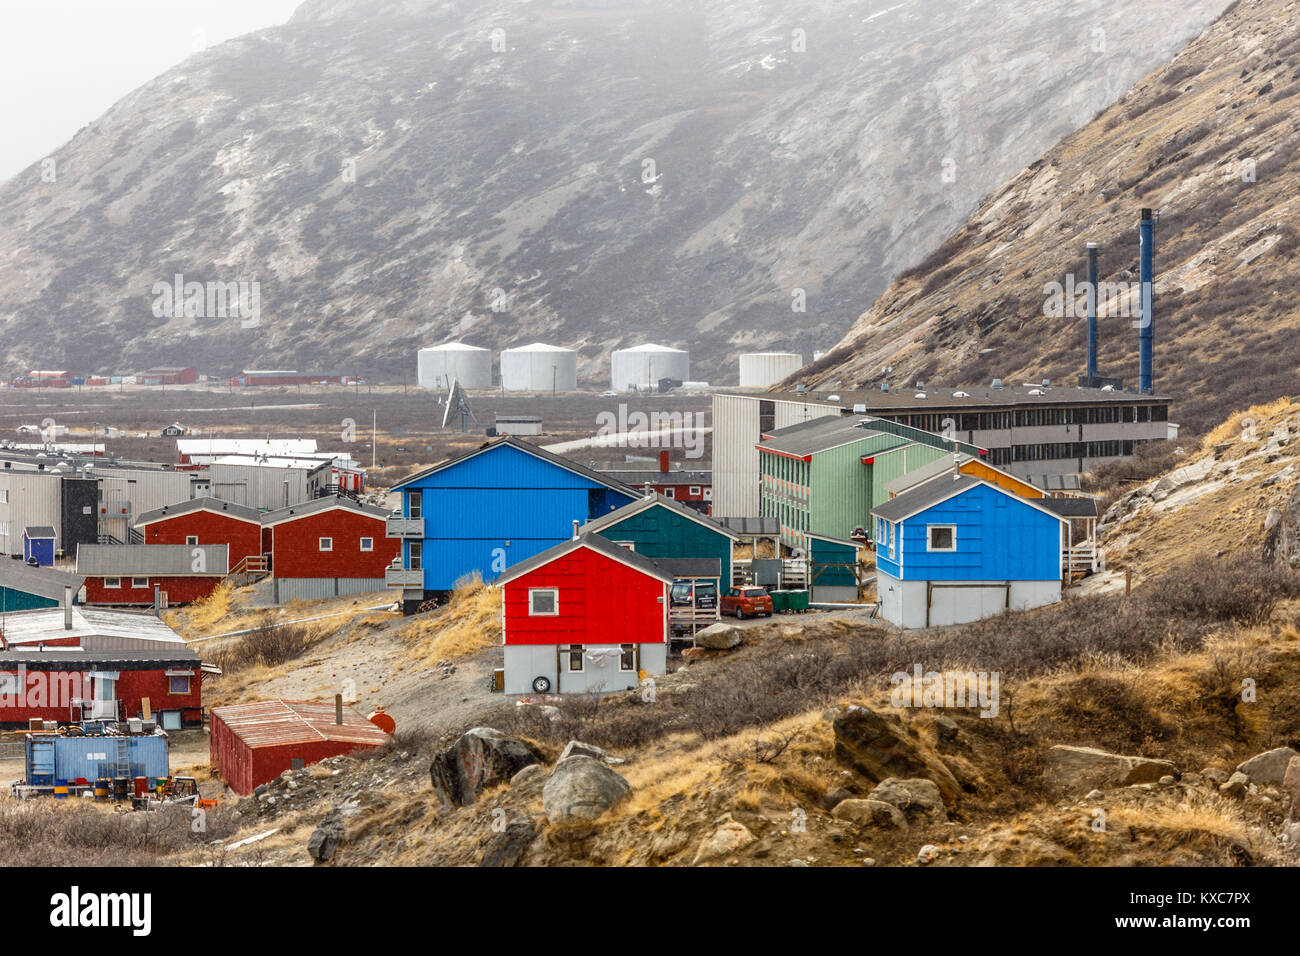 Kangerlussuaq insediamento con strade e case di soggiorno nella valle tra le montagne, Groenlandia Foto Stock